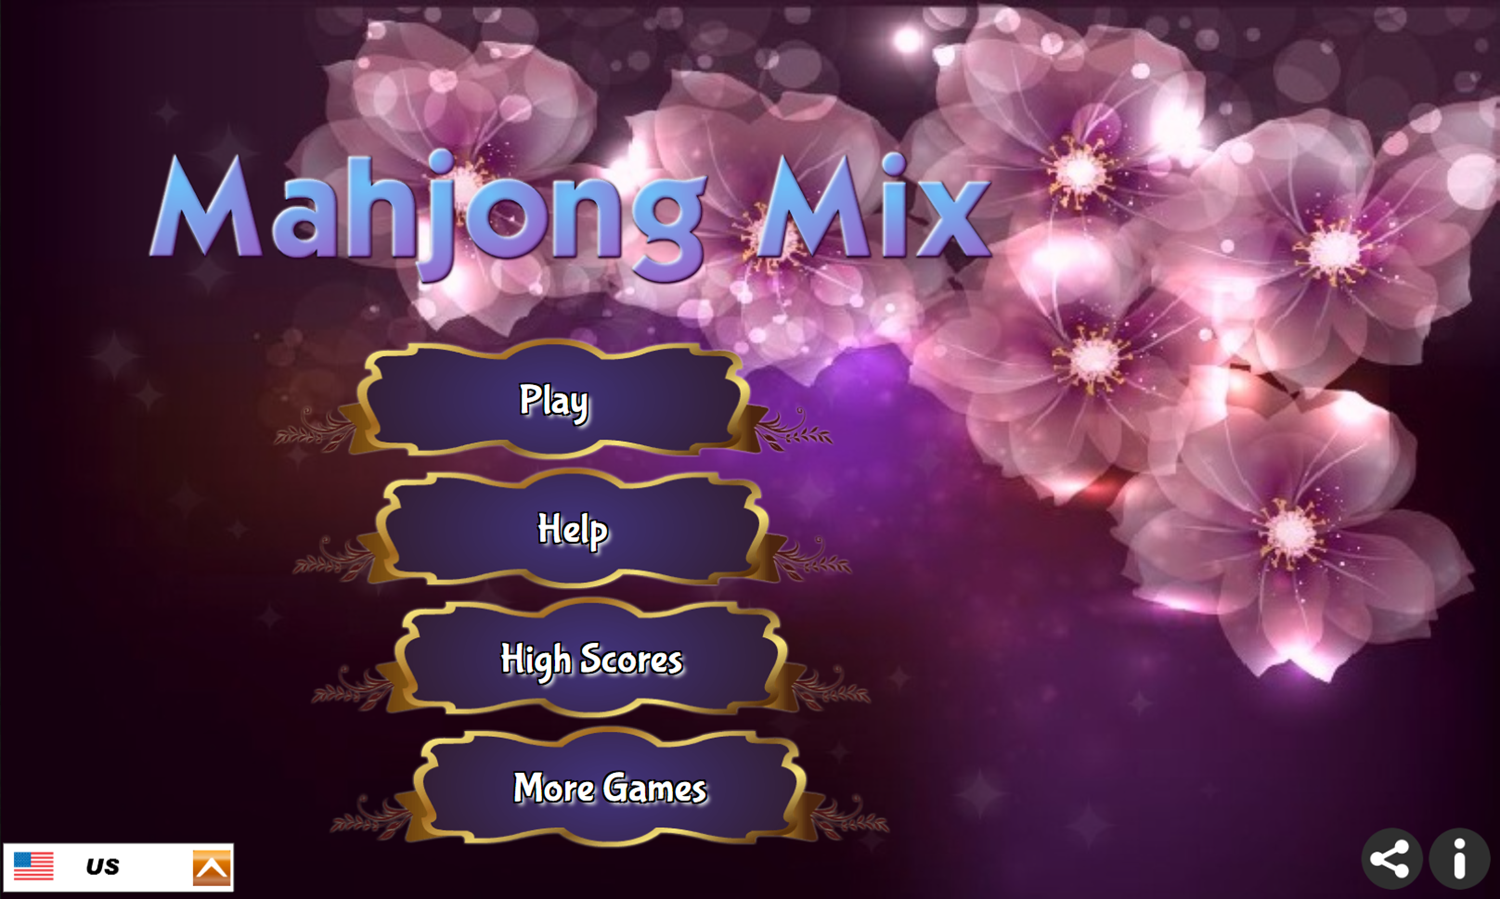 Mahjong Mix Game Welcome Screen Screenshot.